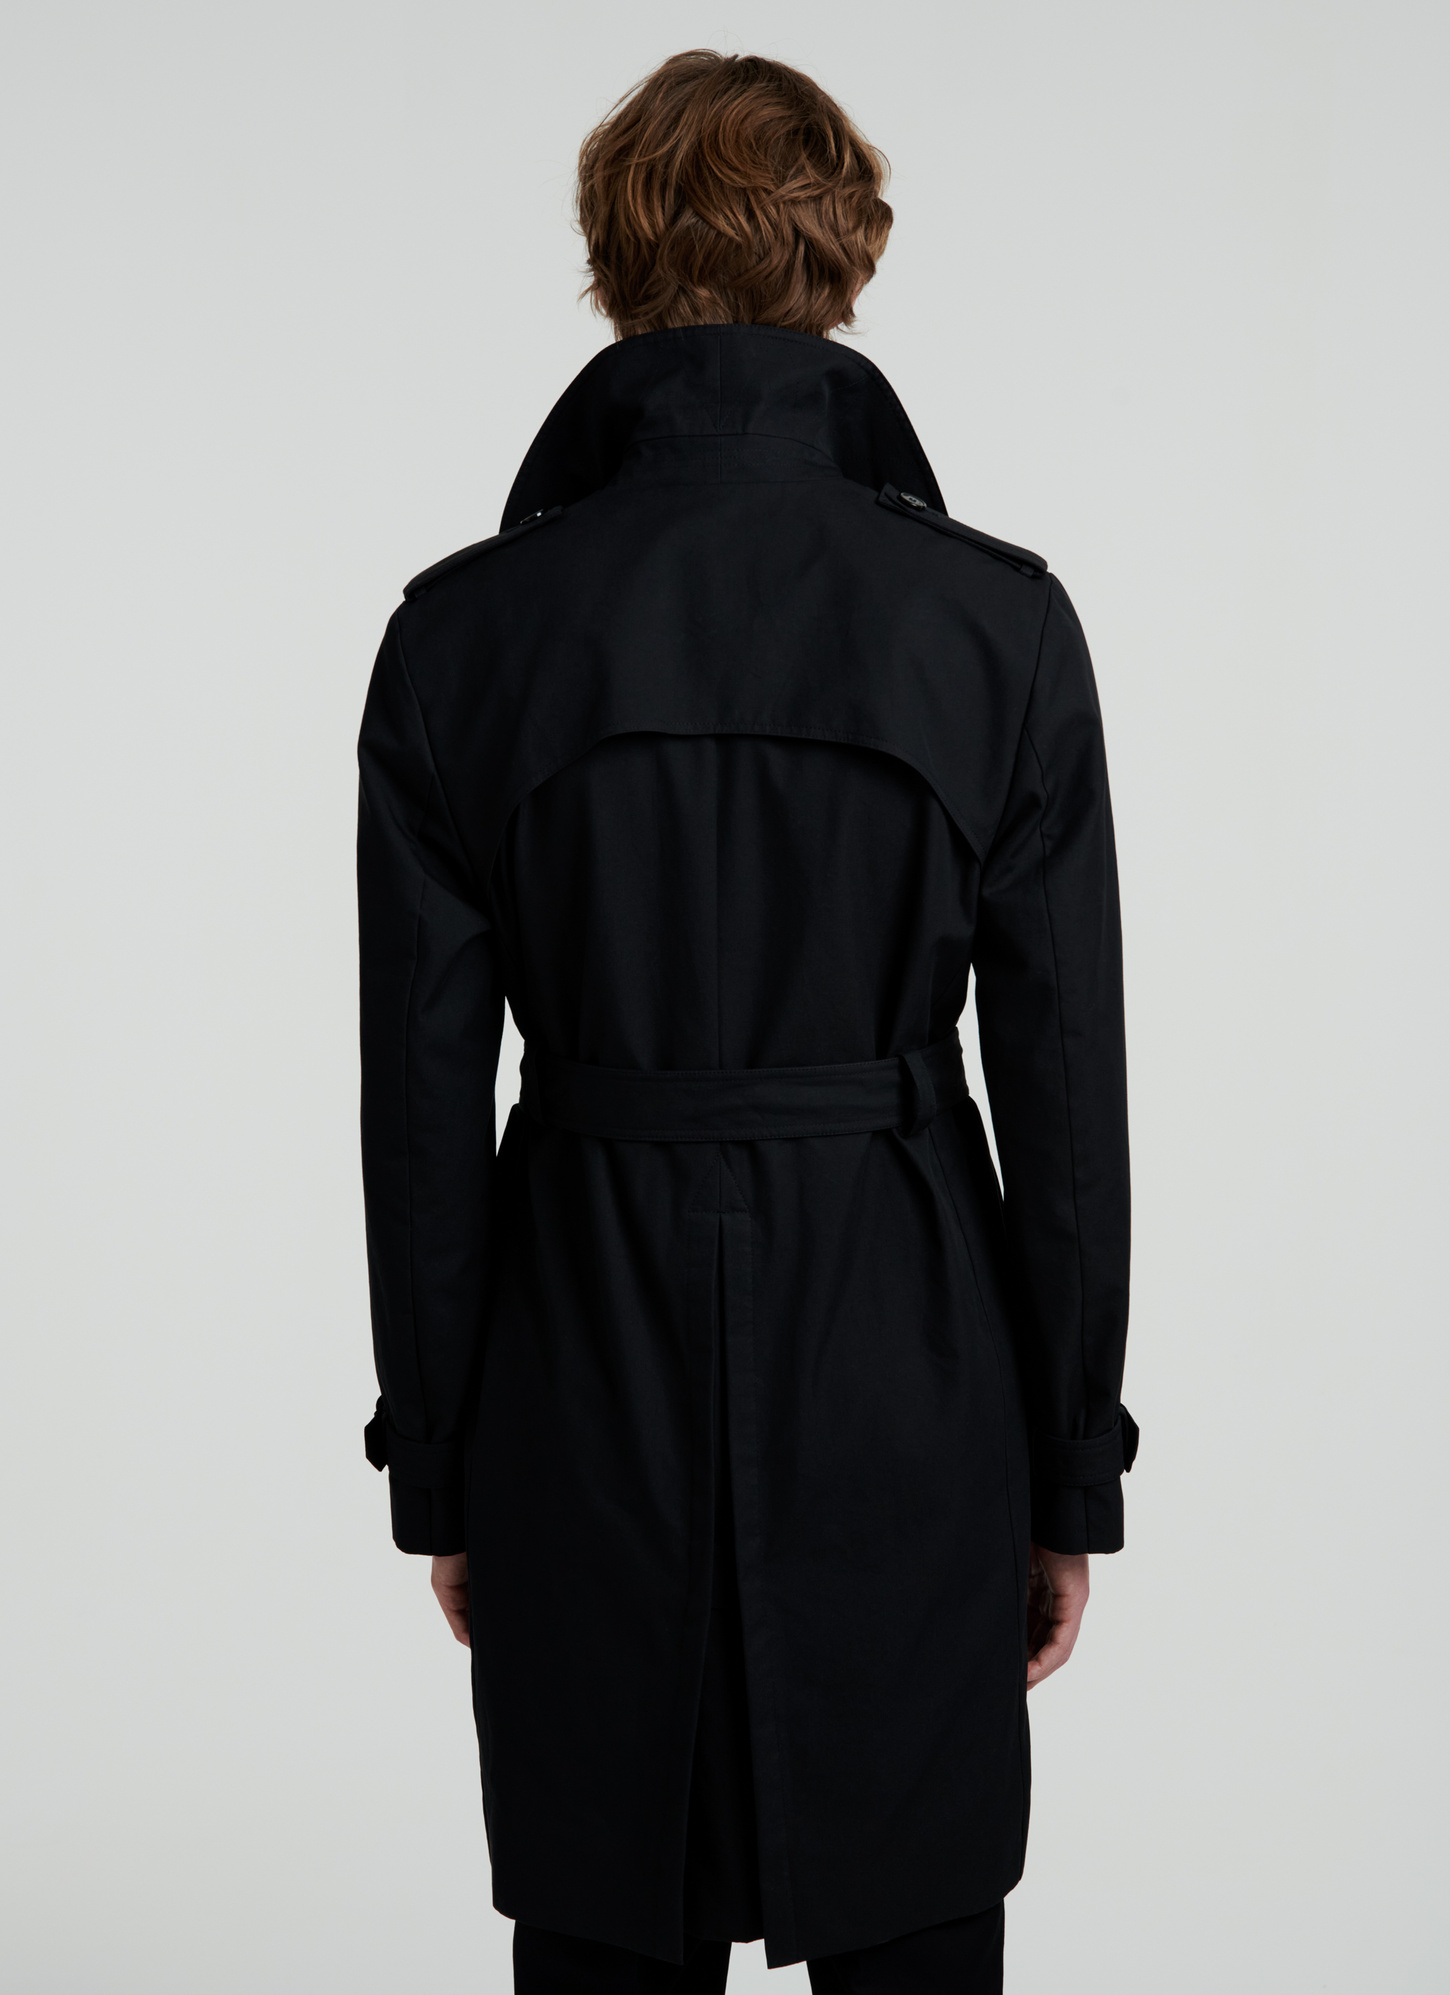 Black trench coat 22EM3VIKY-VM09/20 - Men's trench coat